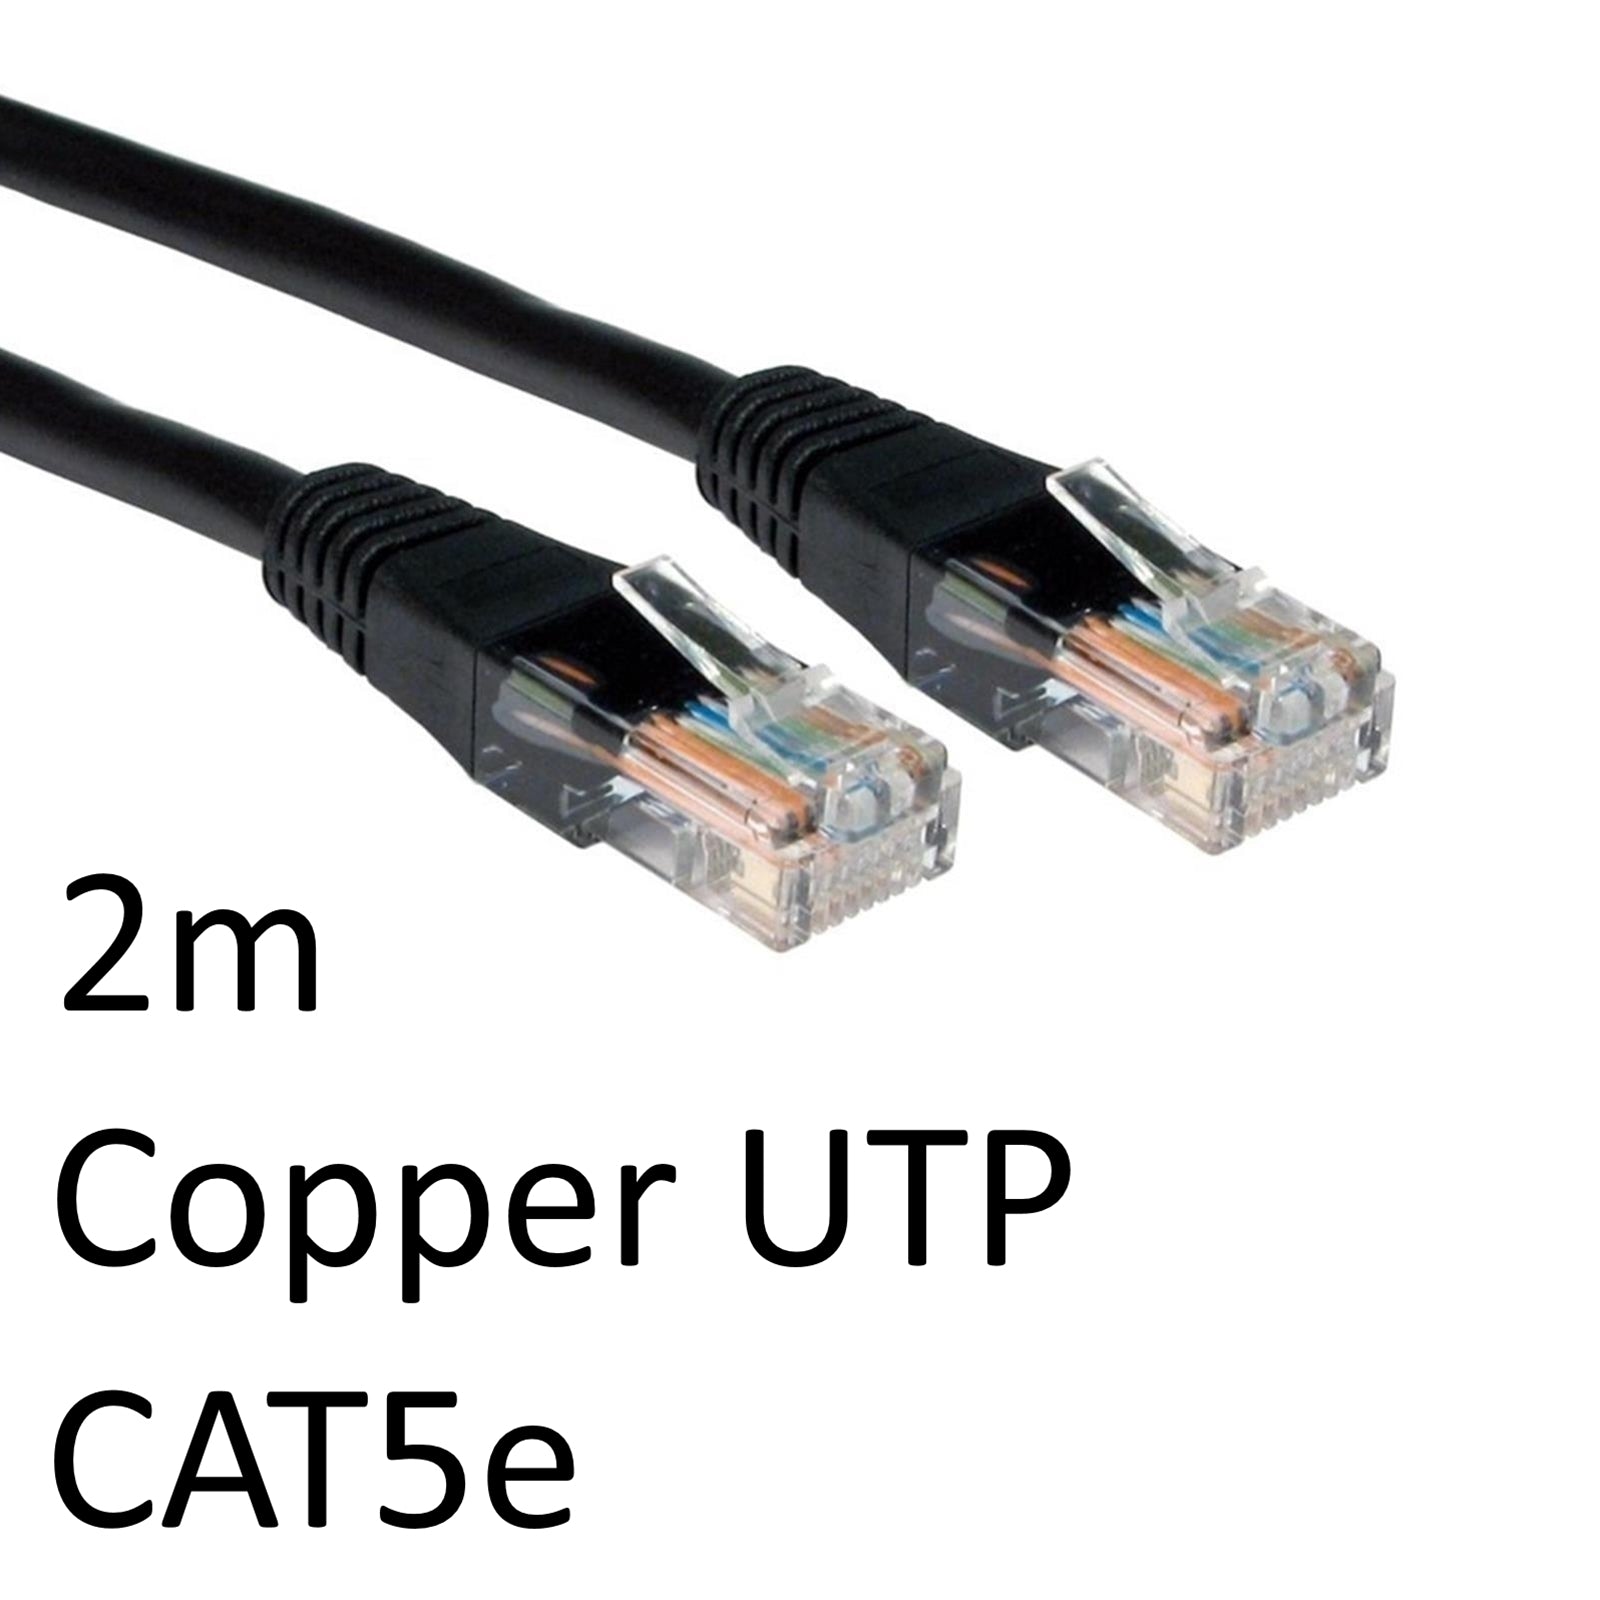 Photos - Cable (video, audio, USB) Target RJ45 (M) to RJ45 (M) CAT5e 2m Black OEM Moulded Boot Copper UTP Net 